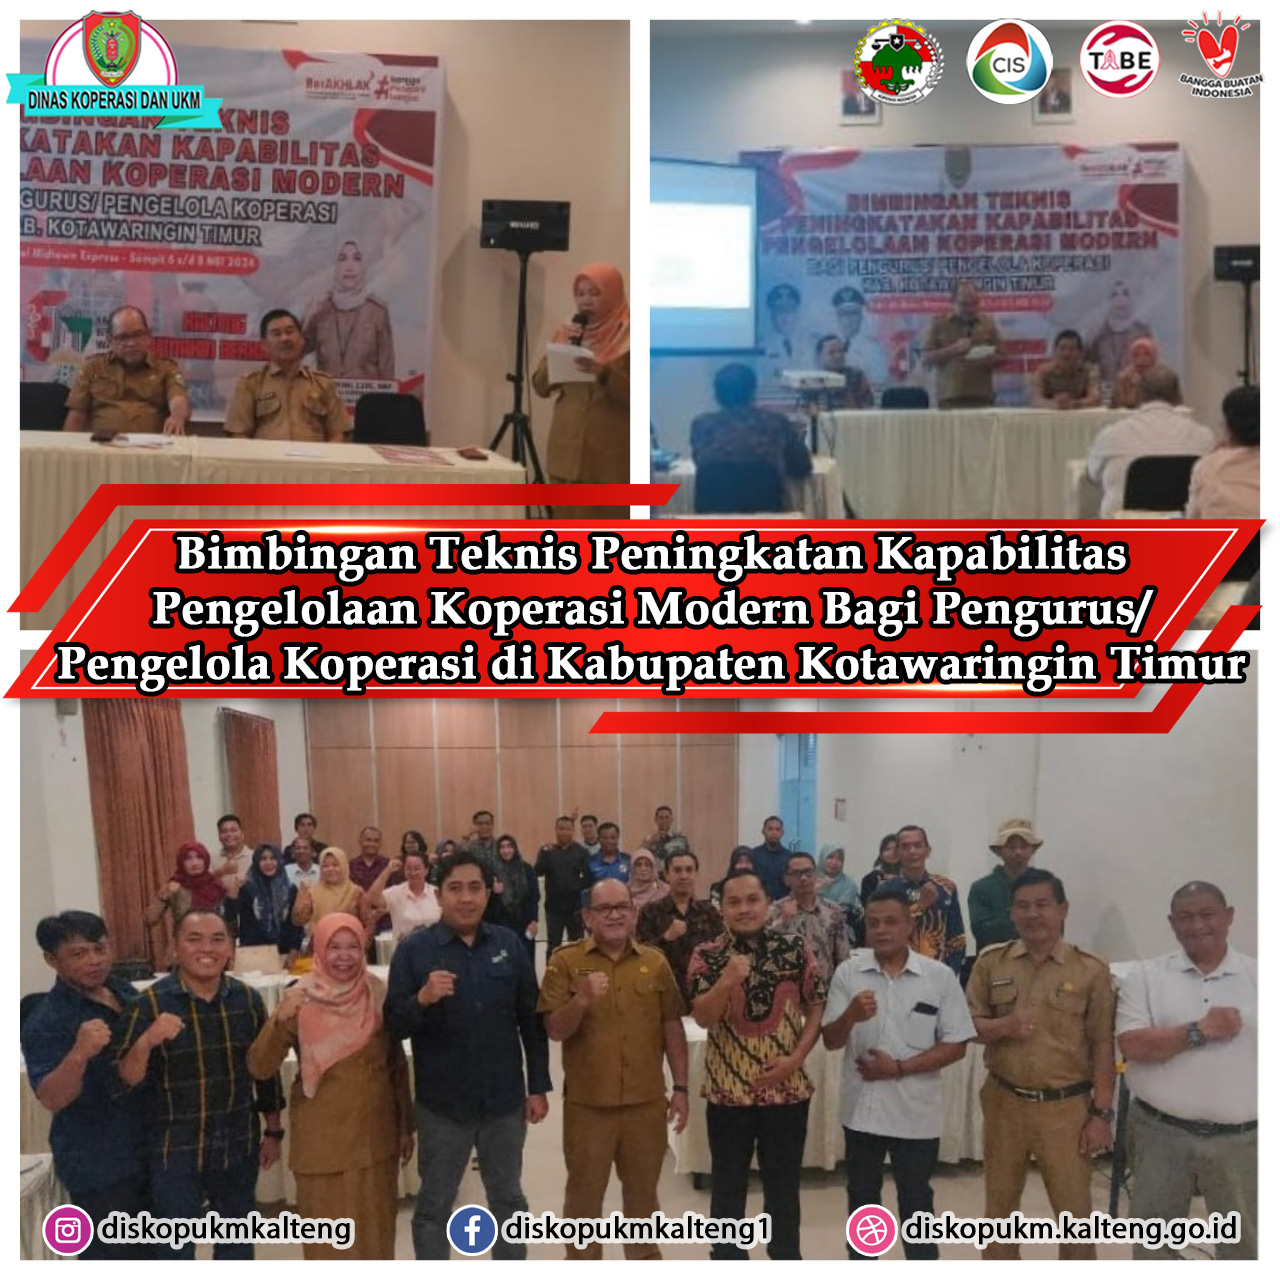 Bimbingan Teknis Koperasi Modern Bagi Pengurus/Pengelola Koperasi di Kabupaten Kotawaringin Timur